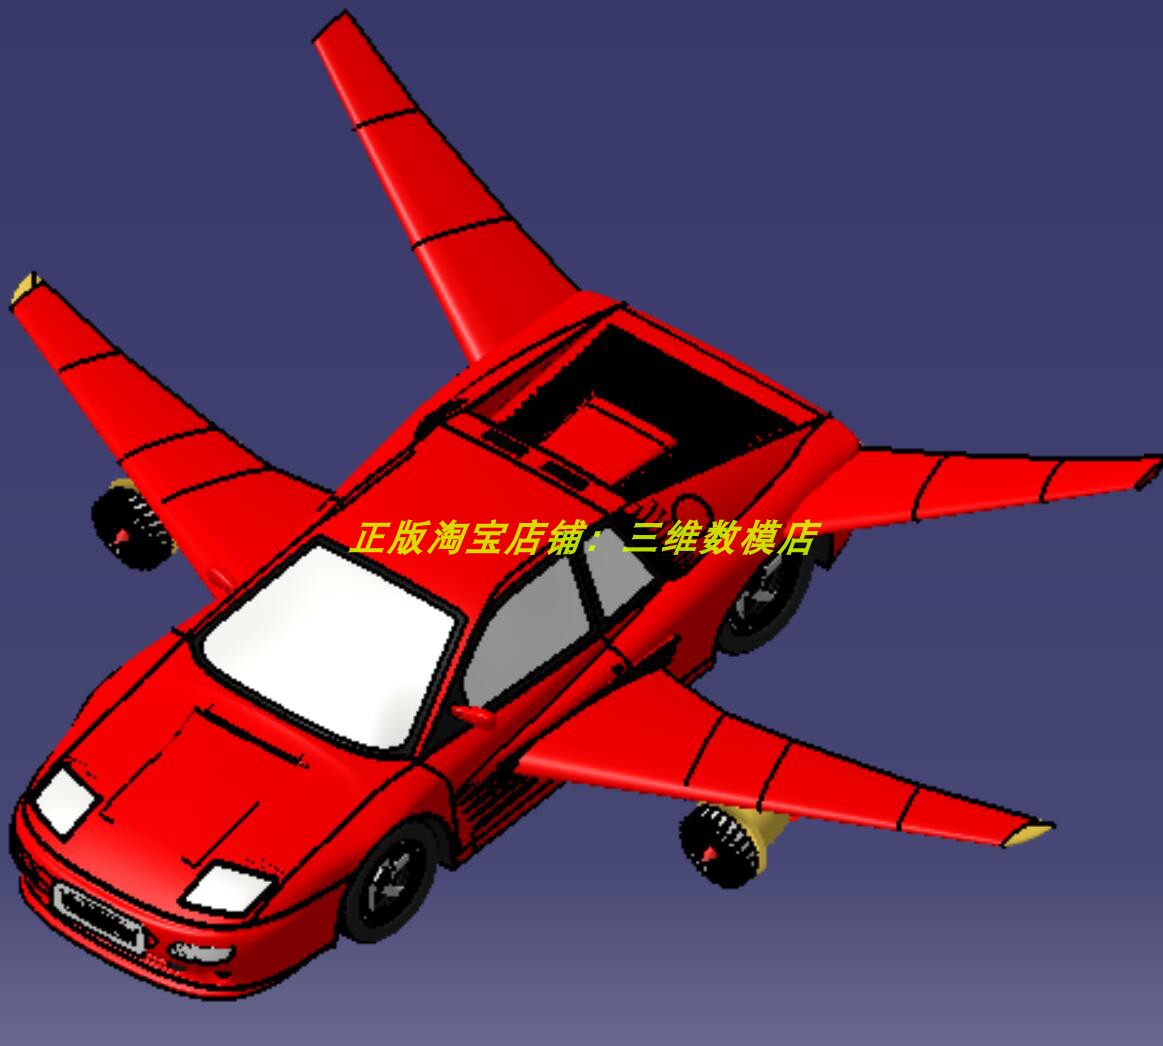 飞行赛车 双座椅轿车跑车双涡轮引擎飞机3D打印素材三维几何模型